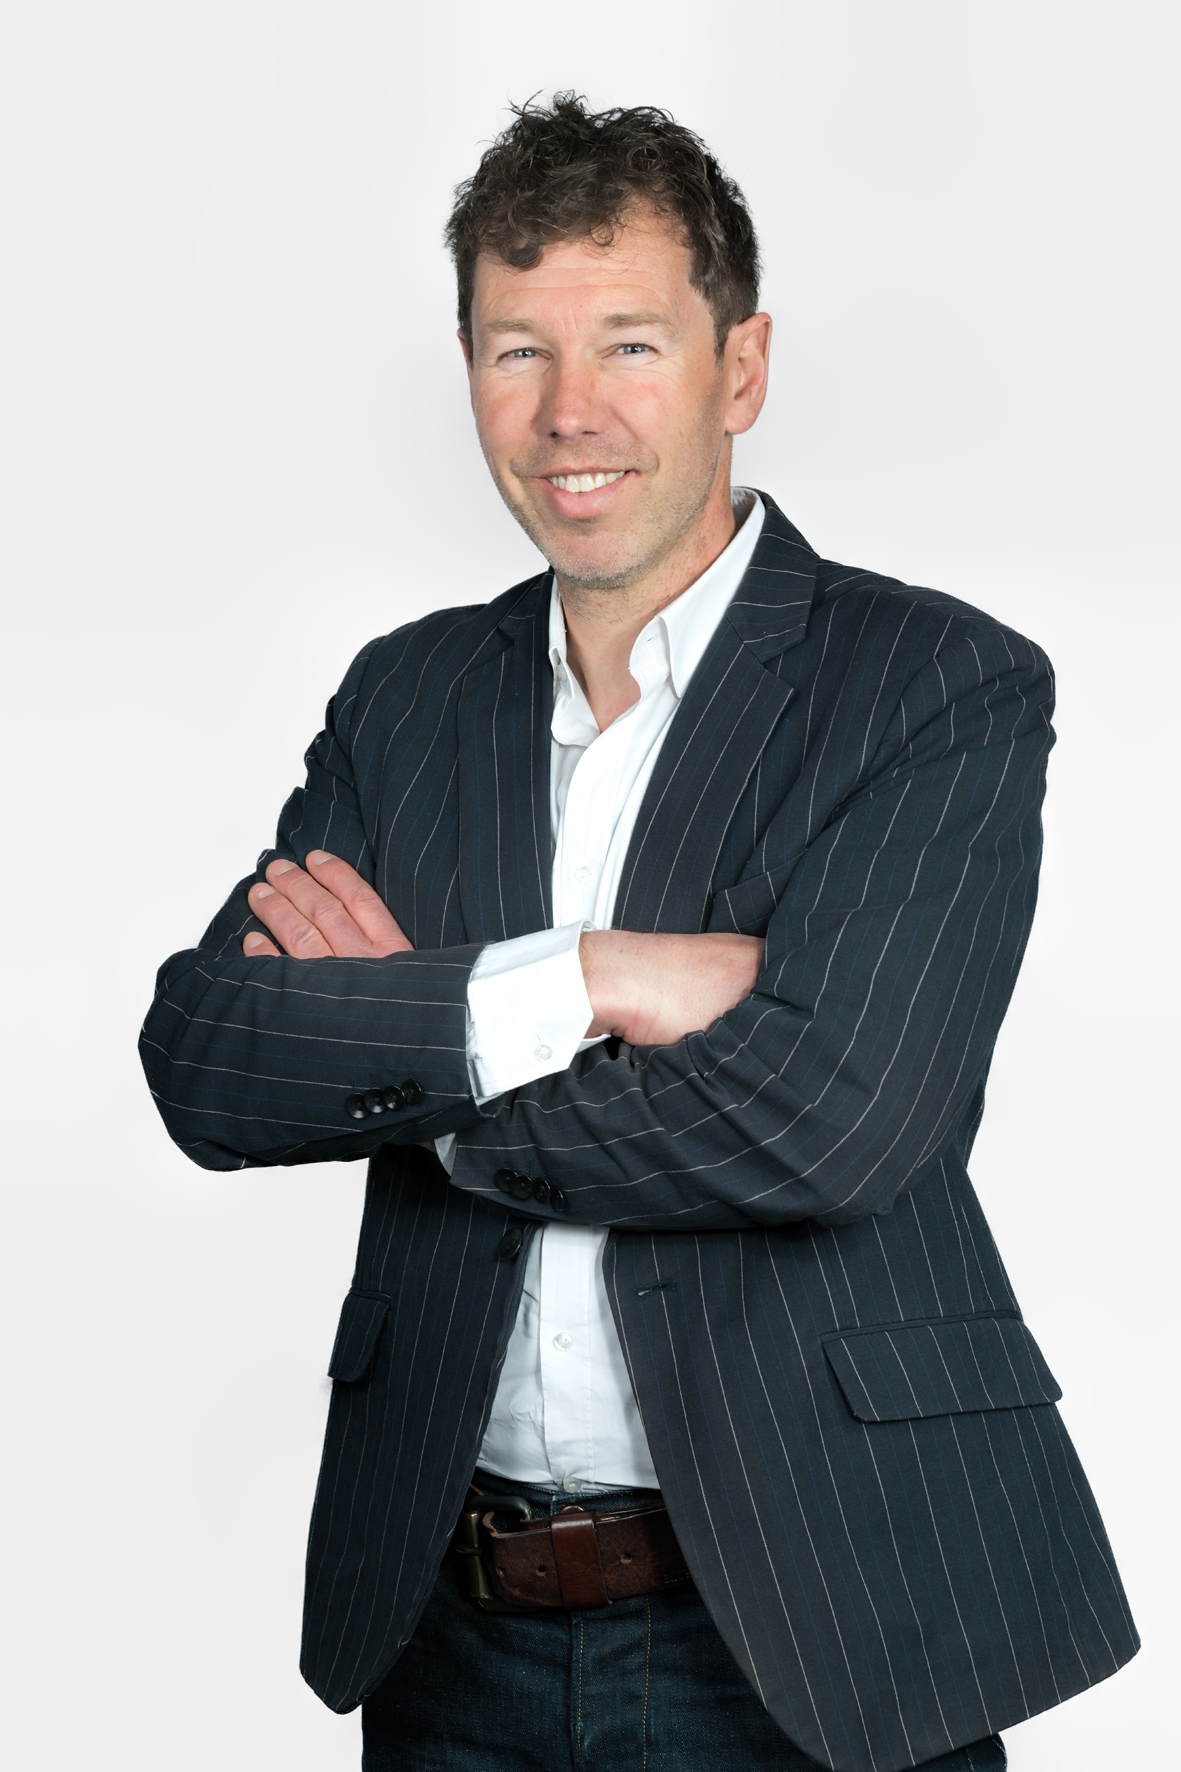 Matthias Hell, CEO of Bozzio Ltd